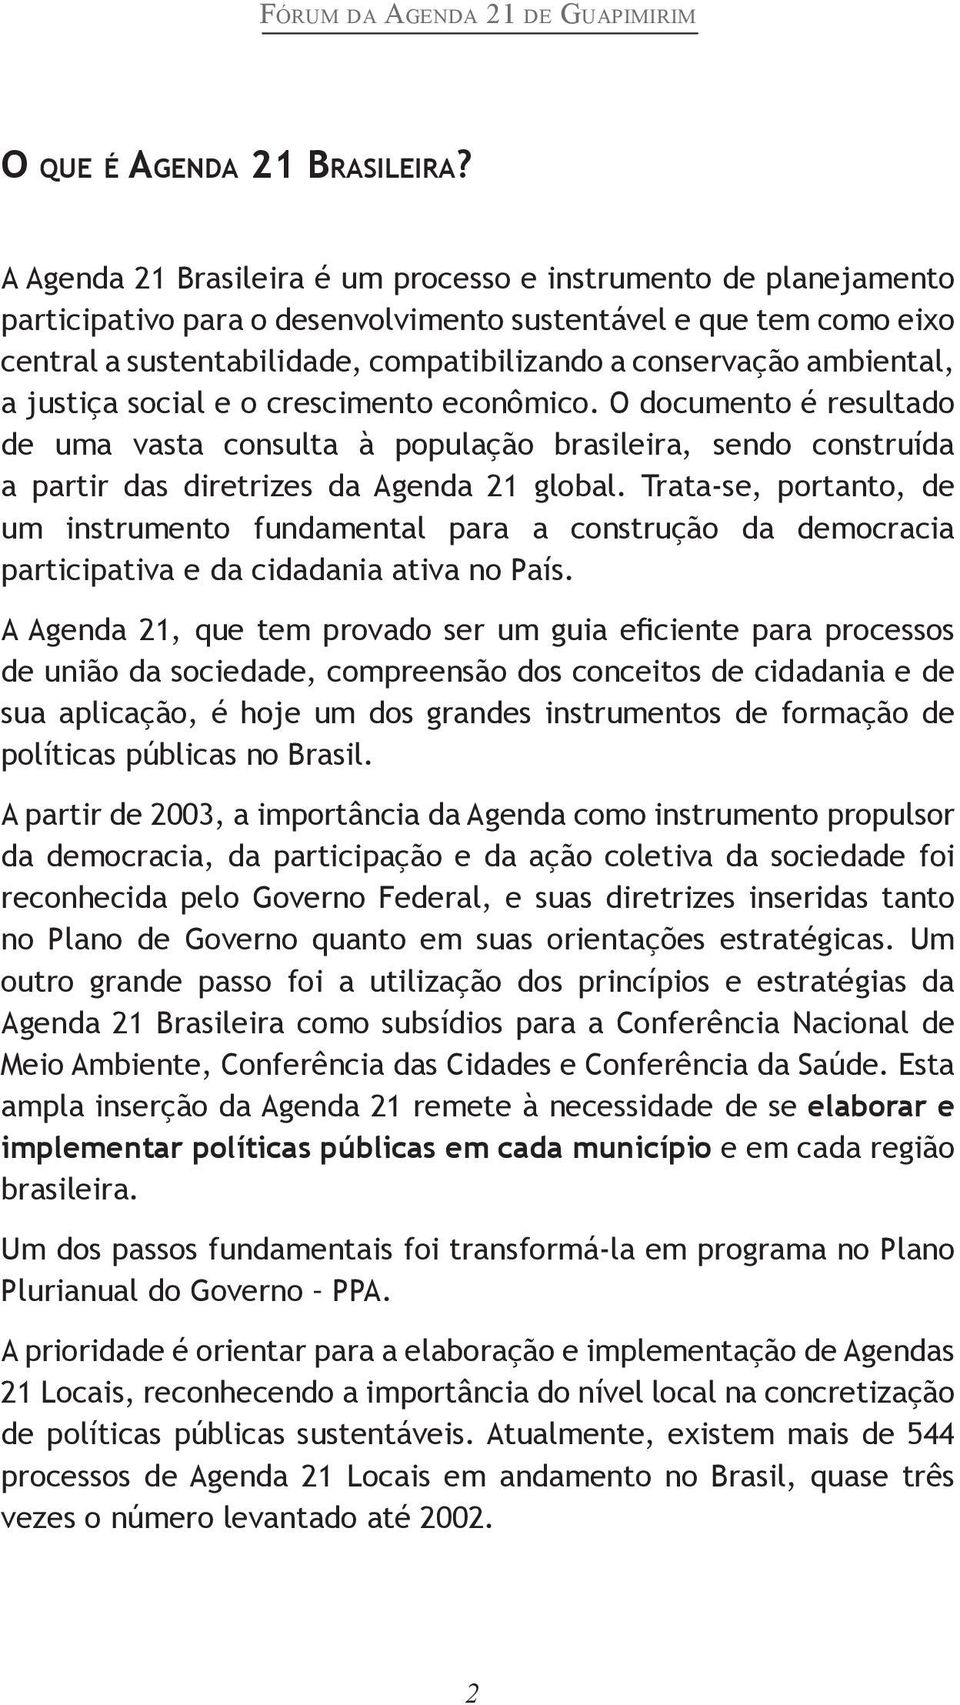 ambiental, a justiça social e o crescimento econômico. O documento é resultado de uma vasta consulta à população brasileira, sendo construída a partir das diretrizes da Agenda 21 global.